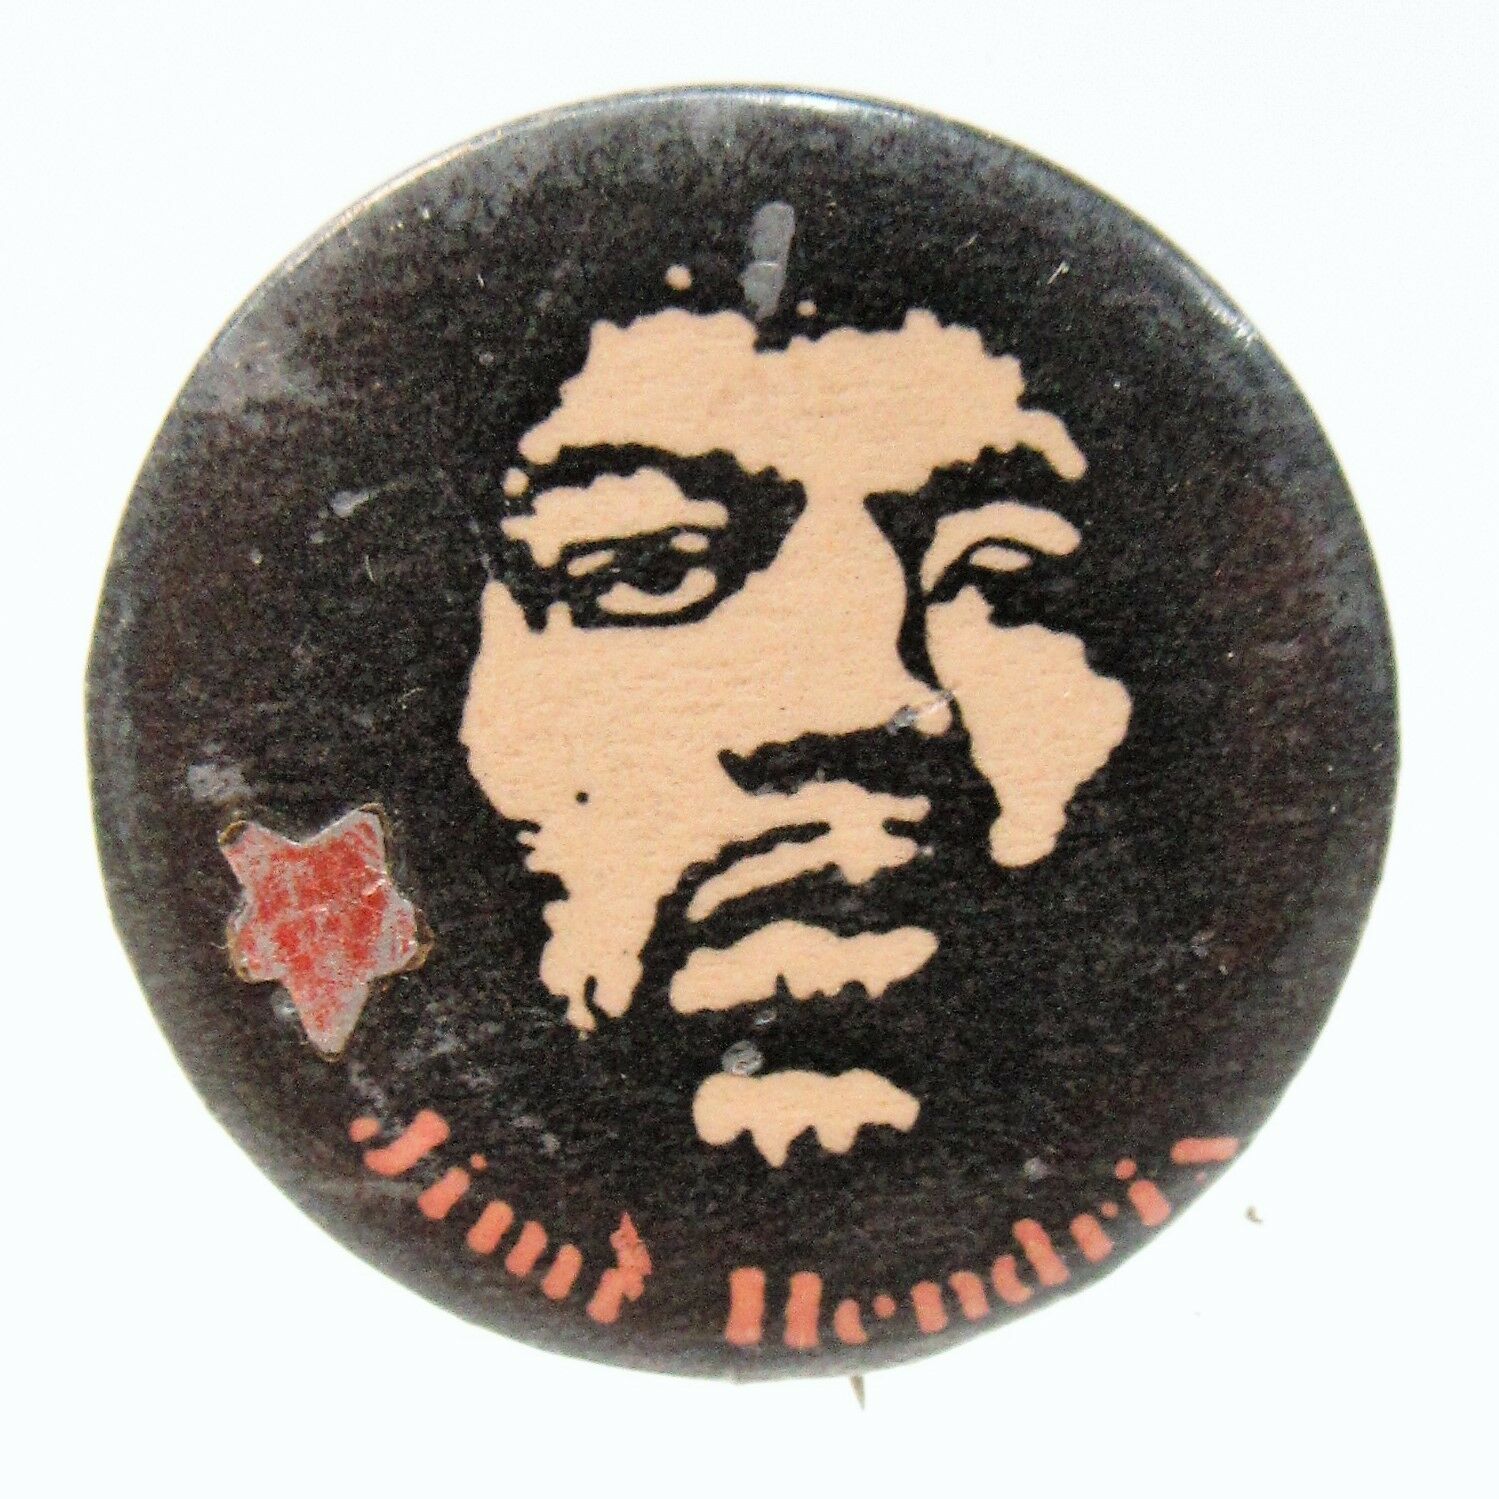 Uncommon Jimi Hendrix 1.25" Celluloid Pinback Button